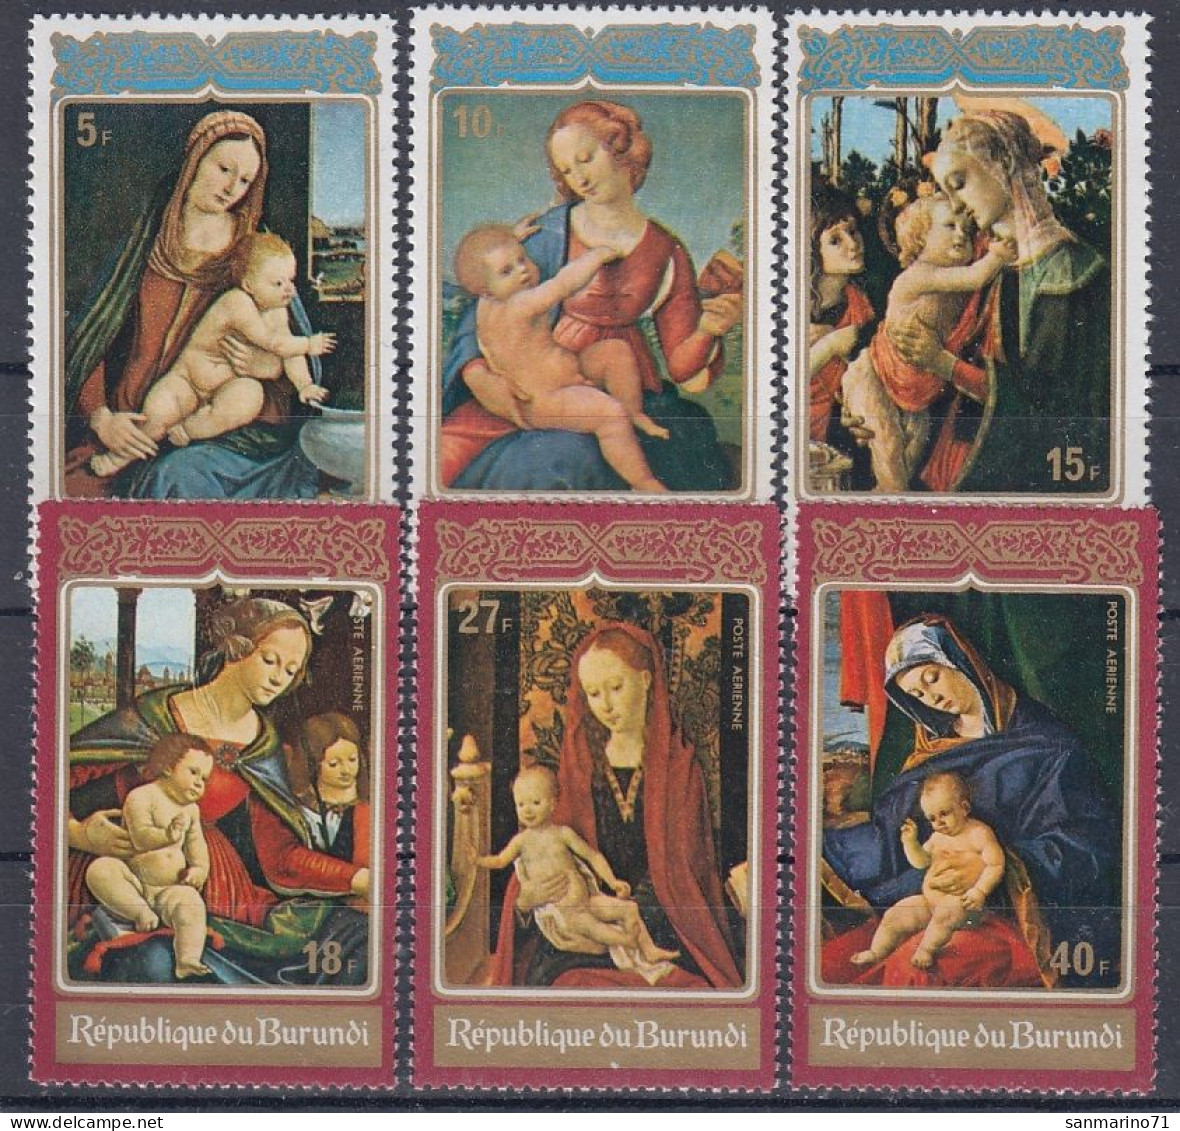 BURUNDI 899-904,unused,Christmas 1972 (**) - Unused Stamps